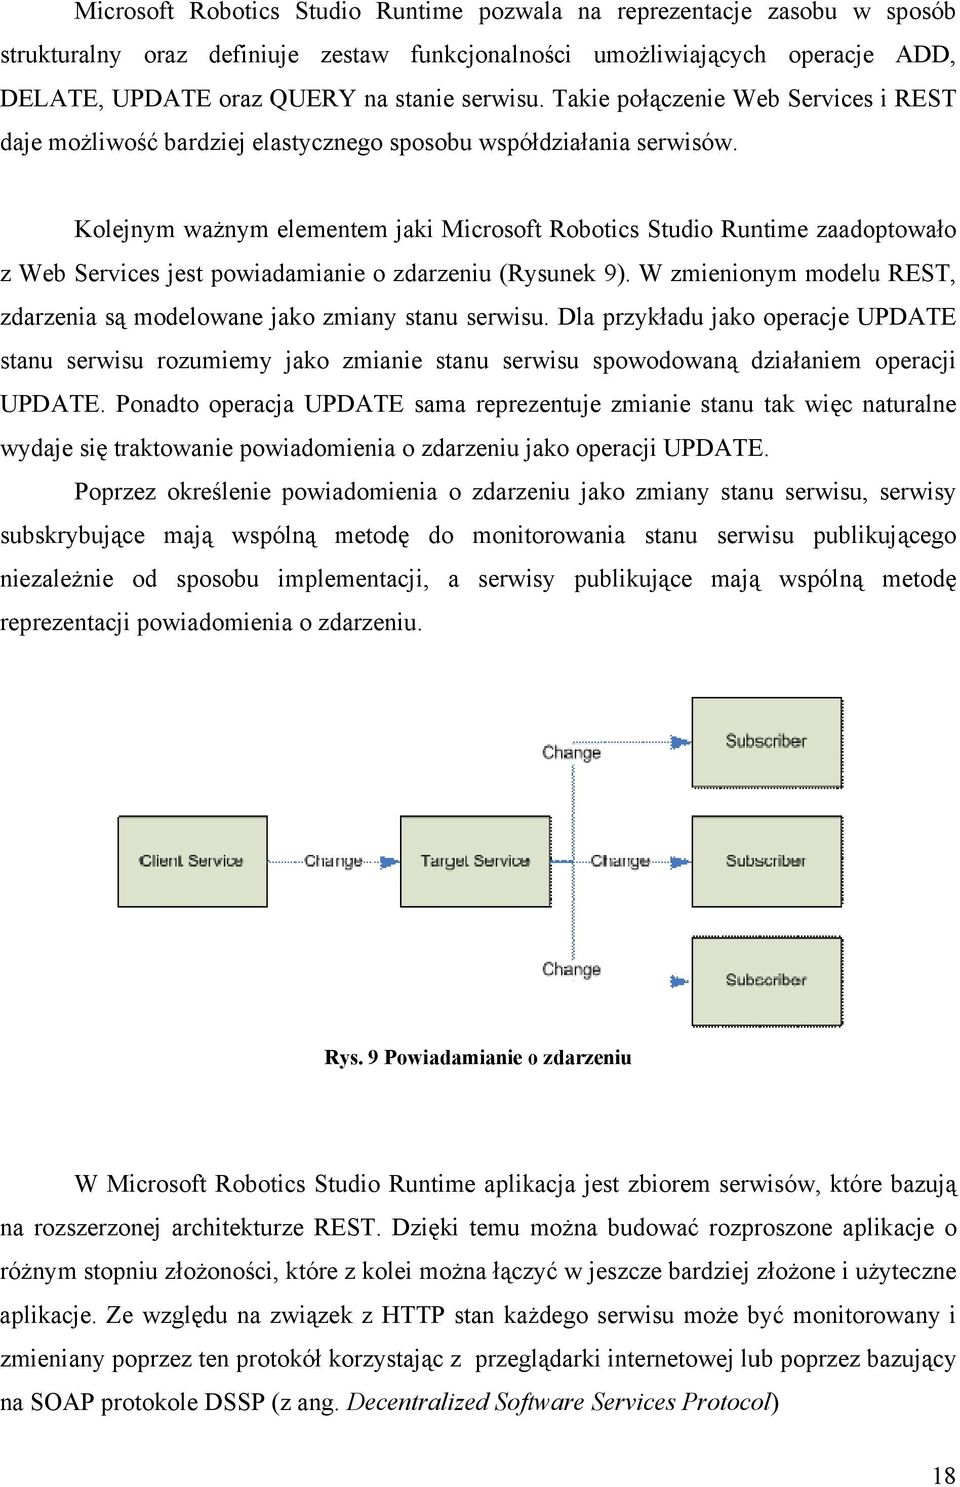 Kolejnym ważnym elementem jaki Microsoft Robotics Studio Runtime zaadoptowało z Web Services jest powiadamianie o zdarzeniu (Rysunek 9).